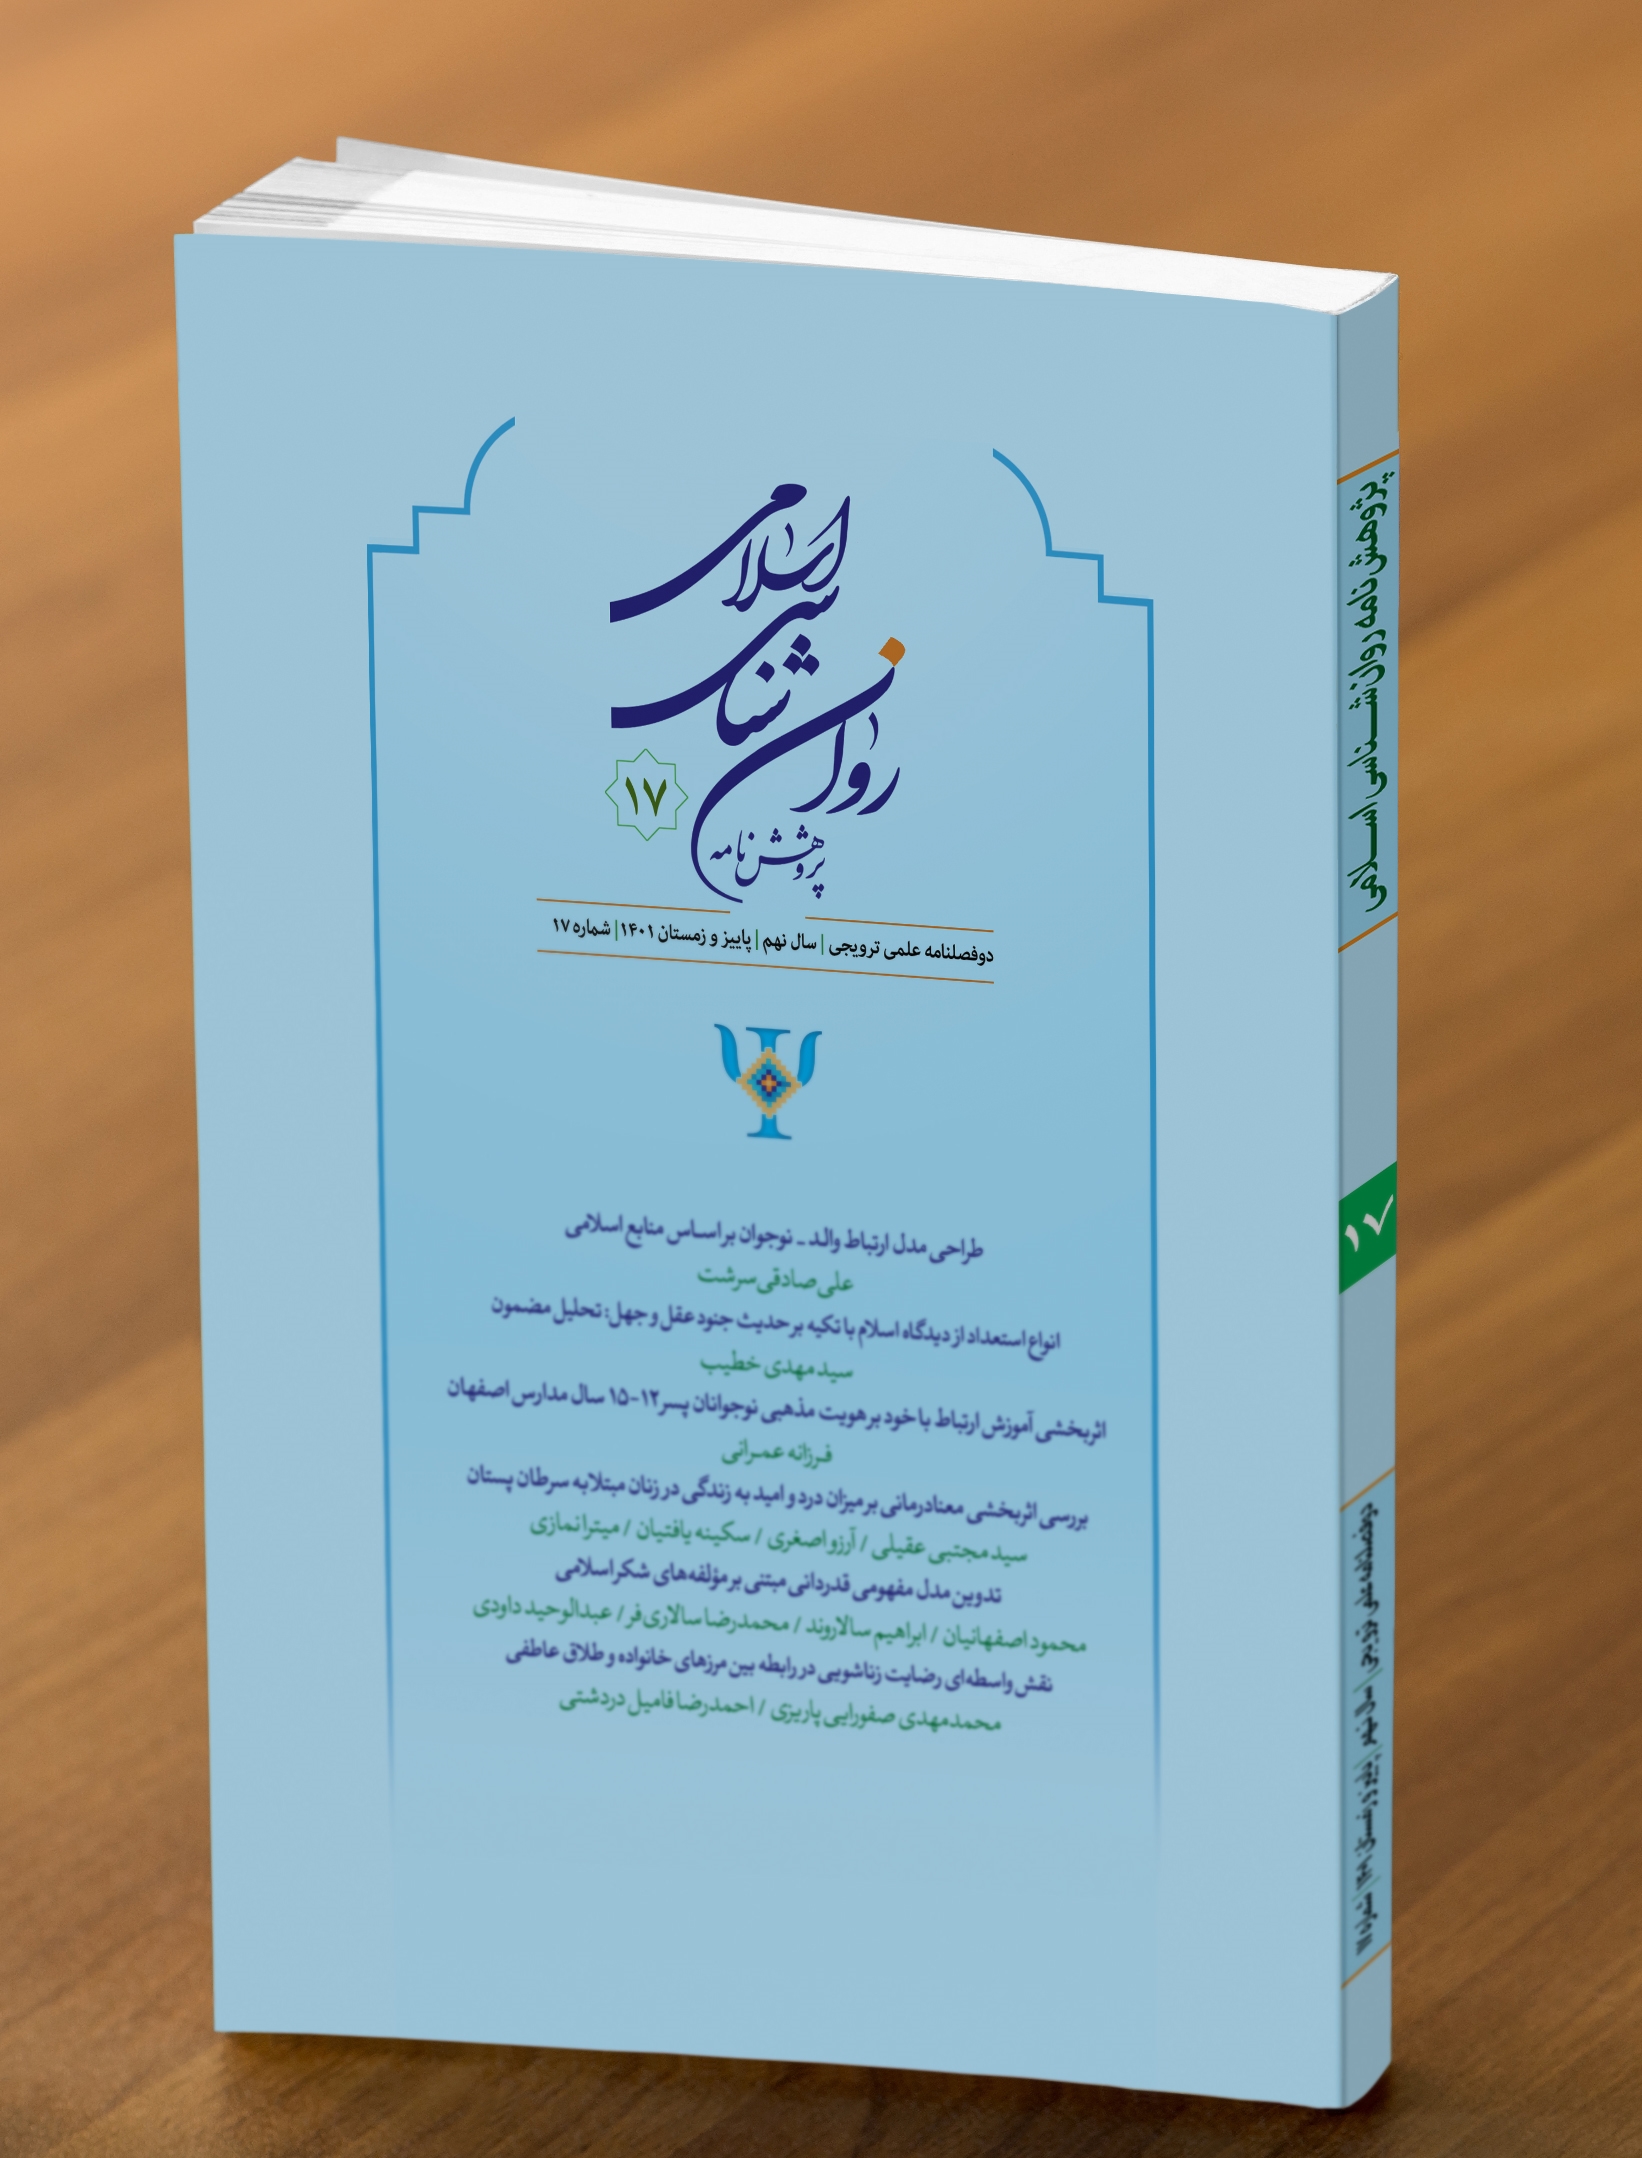 هفدهمین شماره از دوفصلنامه "پژوهشنامه روان شناسی اسلامی" منتشر شد